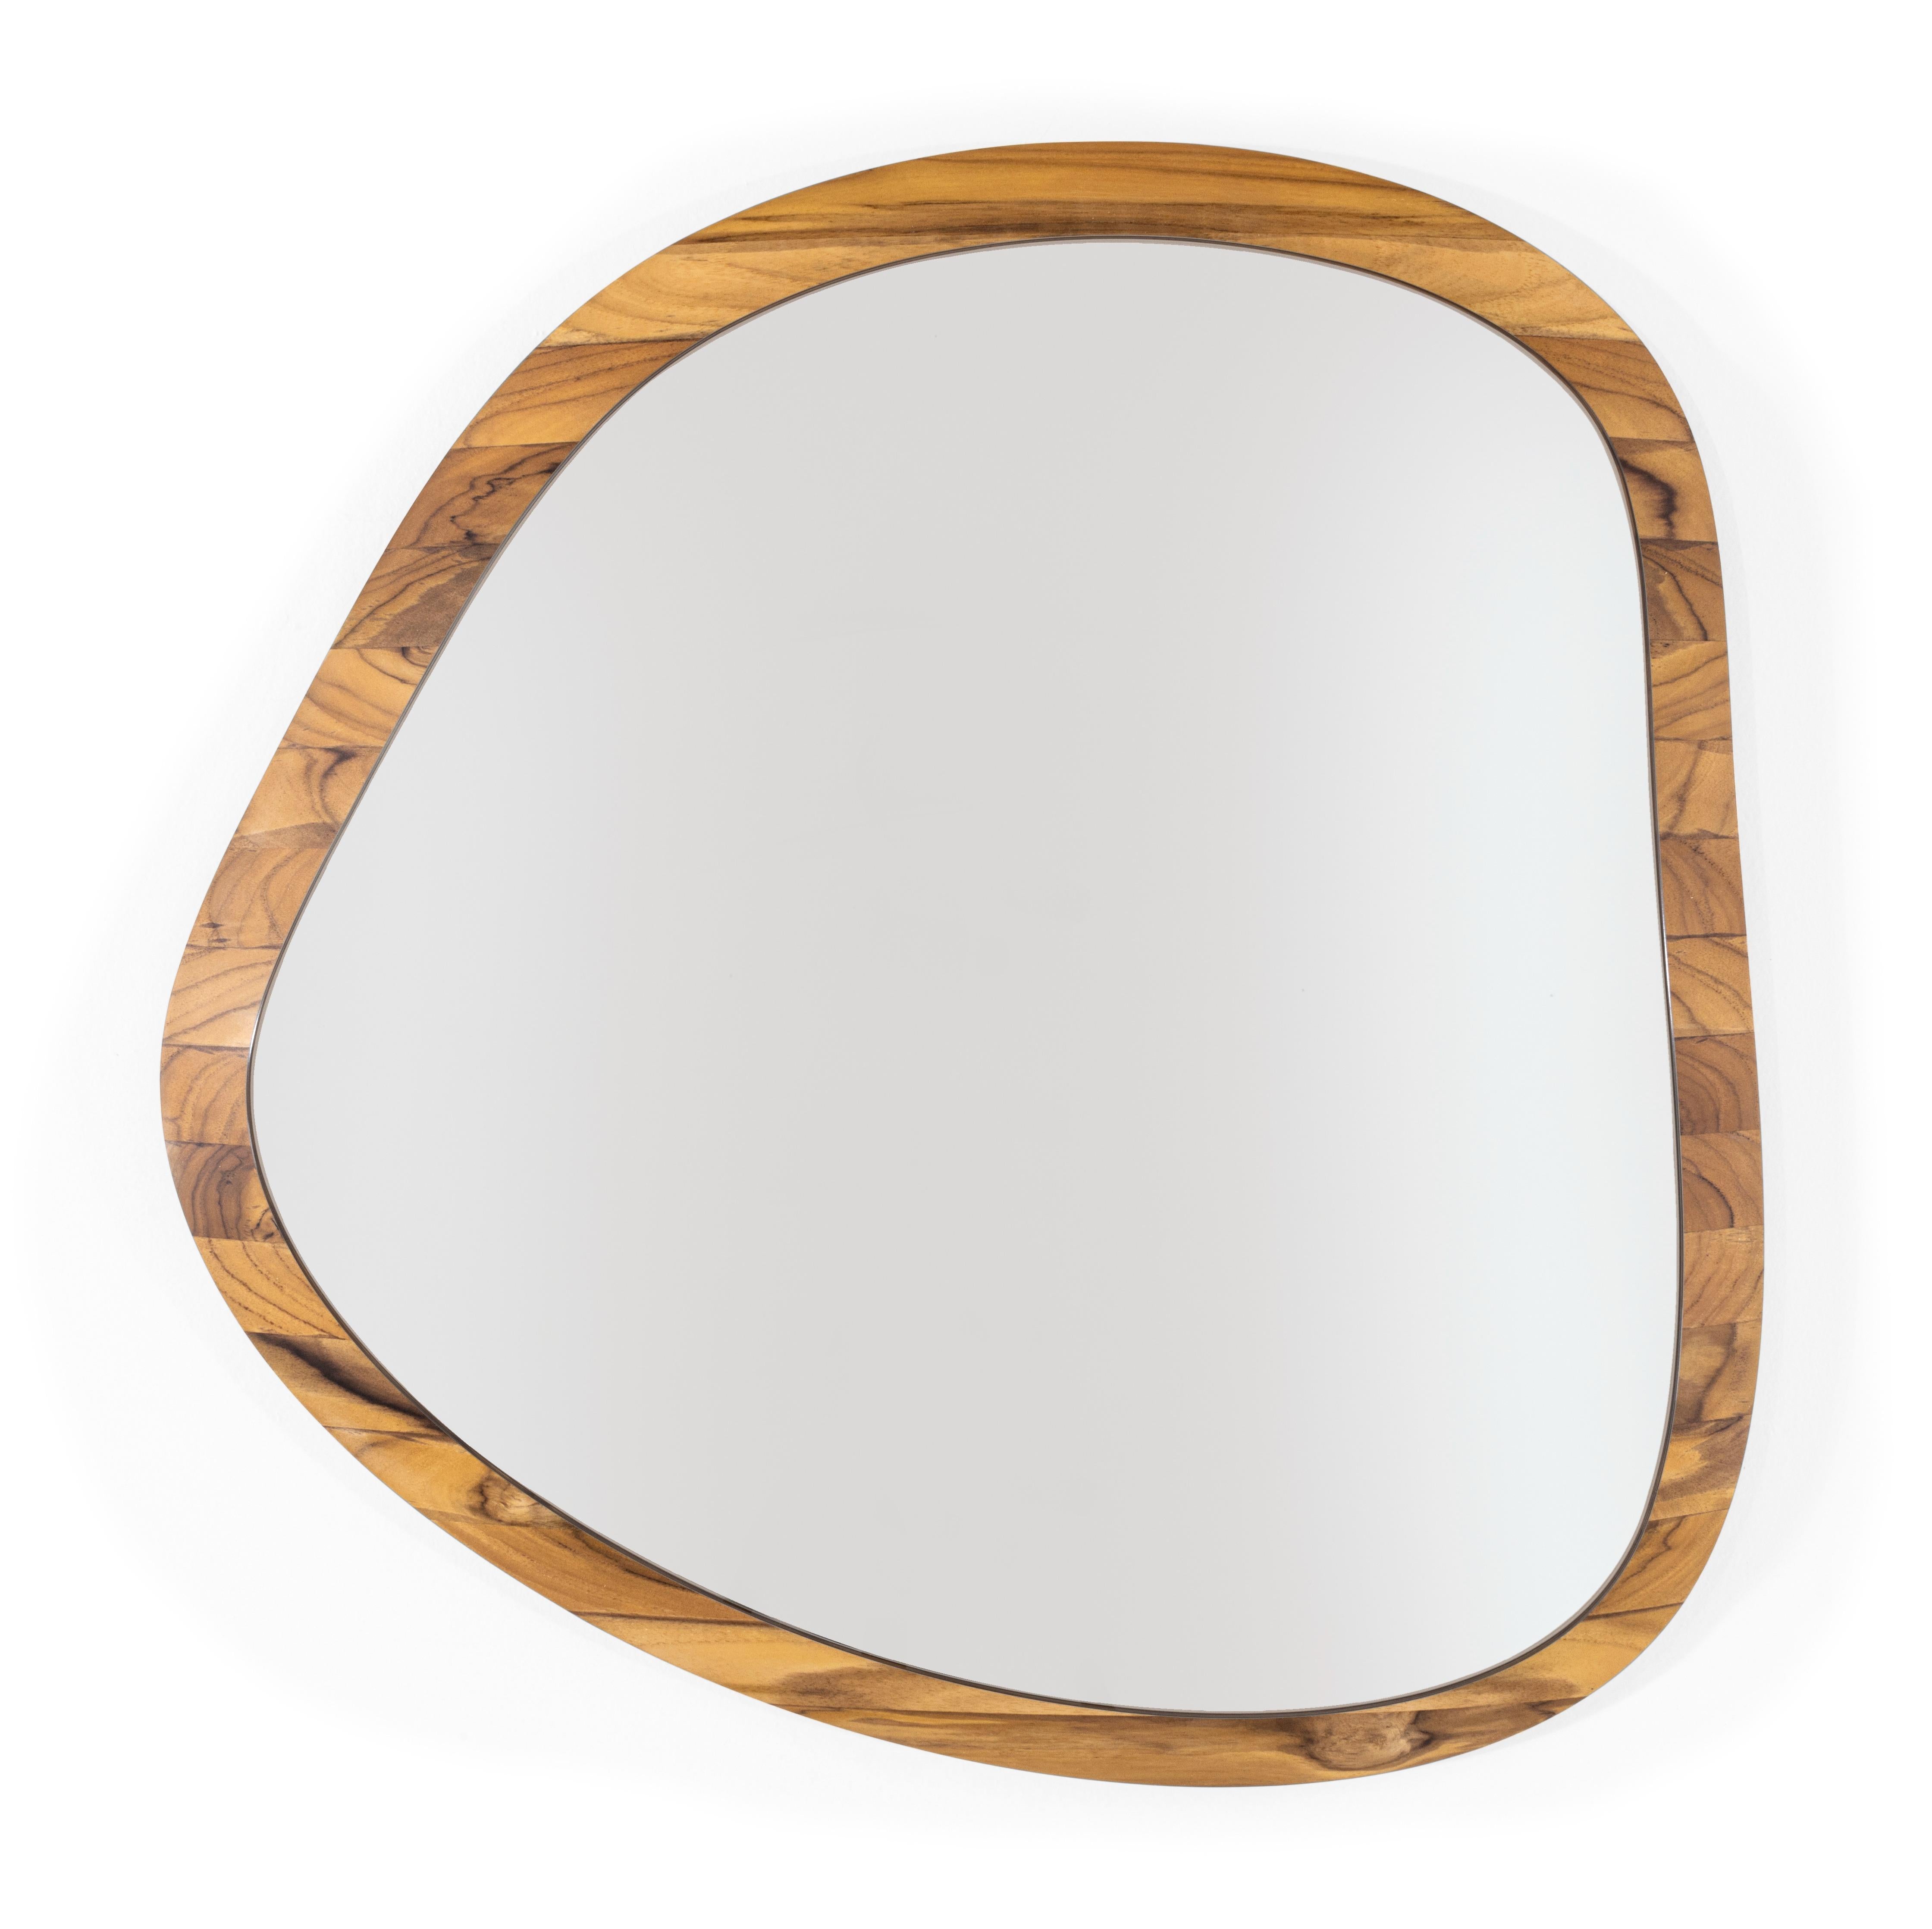 Les formes organiques qui forment la série de miroirs Pantê s'inspirent du motif des taches que l'on voit sur le pelage d'un jaguar. Le design de la menuiserie encadre le miroir, incorporant des éléments de la nature dans la maison. Le bois massif